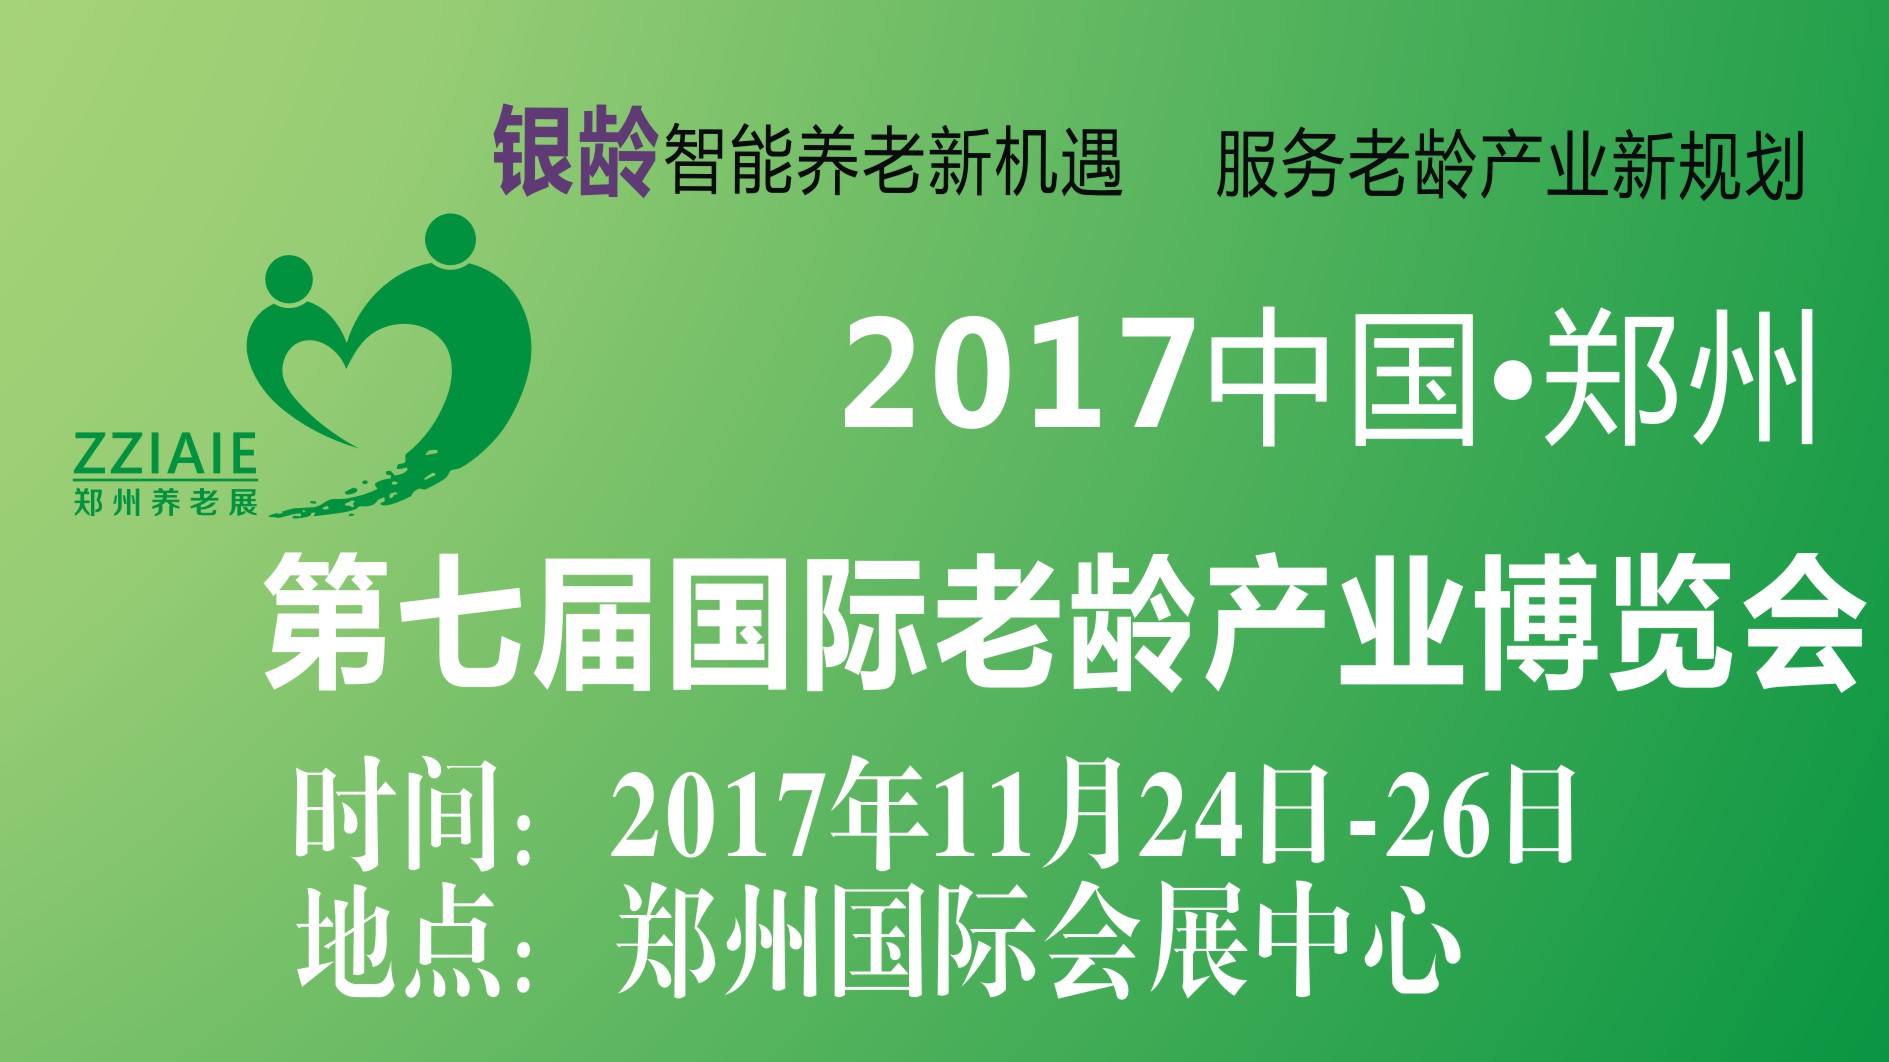 2017中国(郑州)国际康复医疗器械、辅具暨健康管理展览会